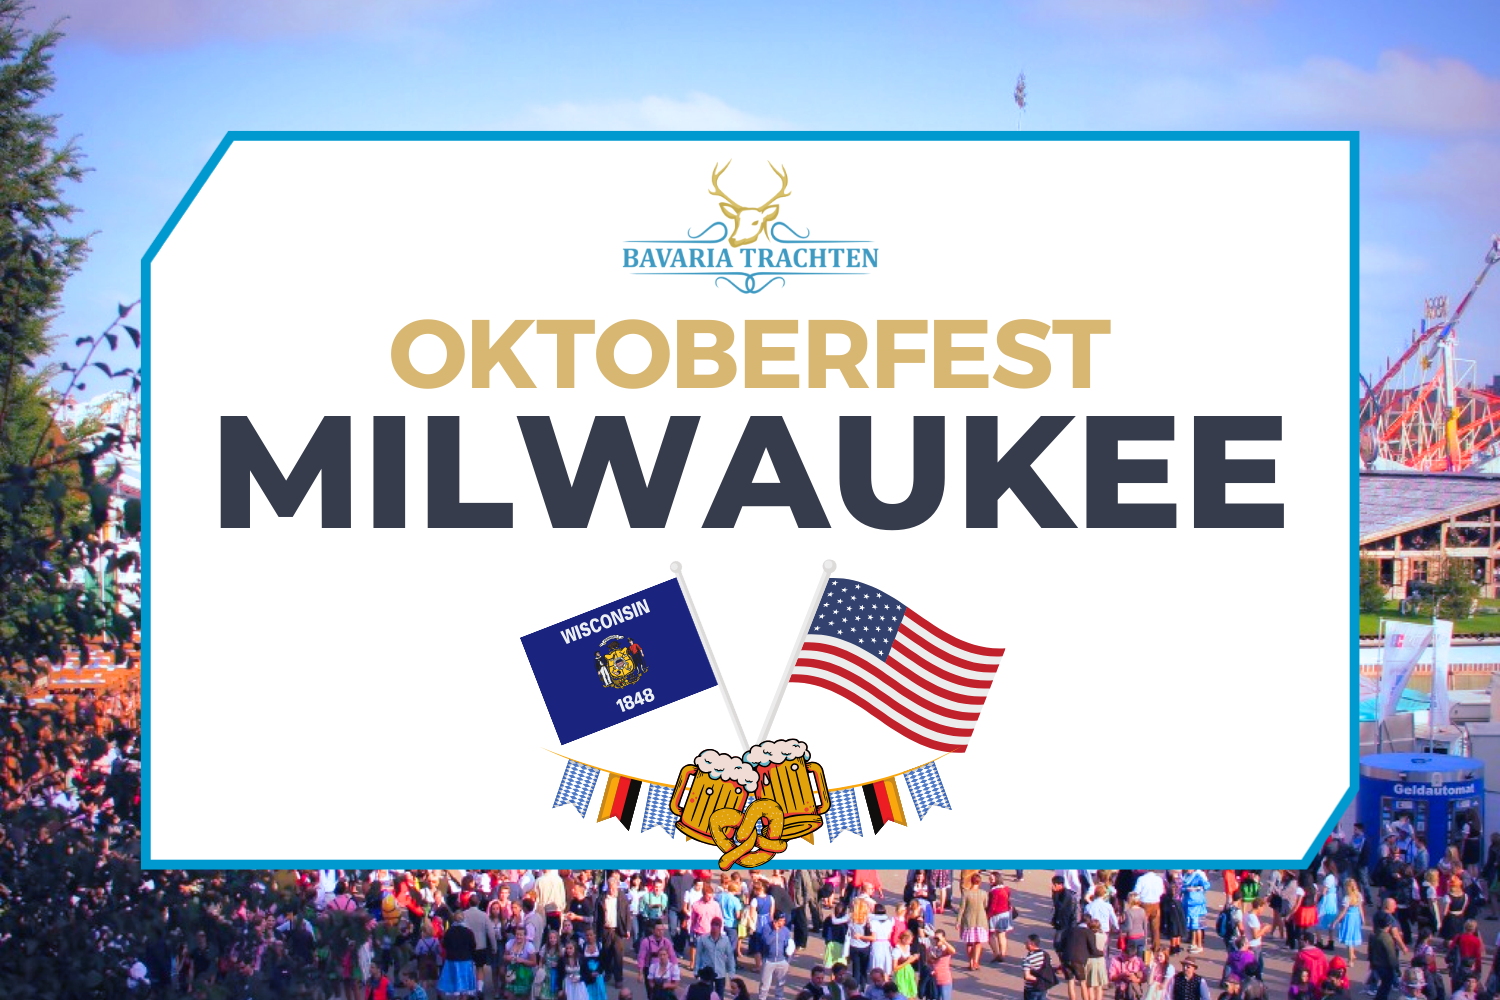 Oktoberfest Milwaukee, Winconsin, USA, Germany